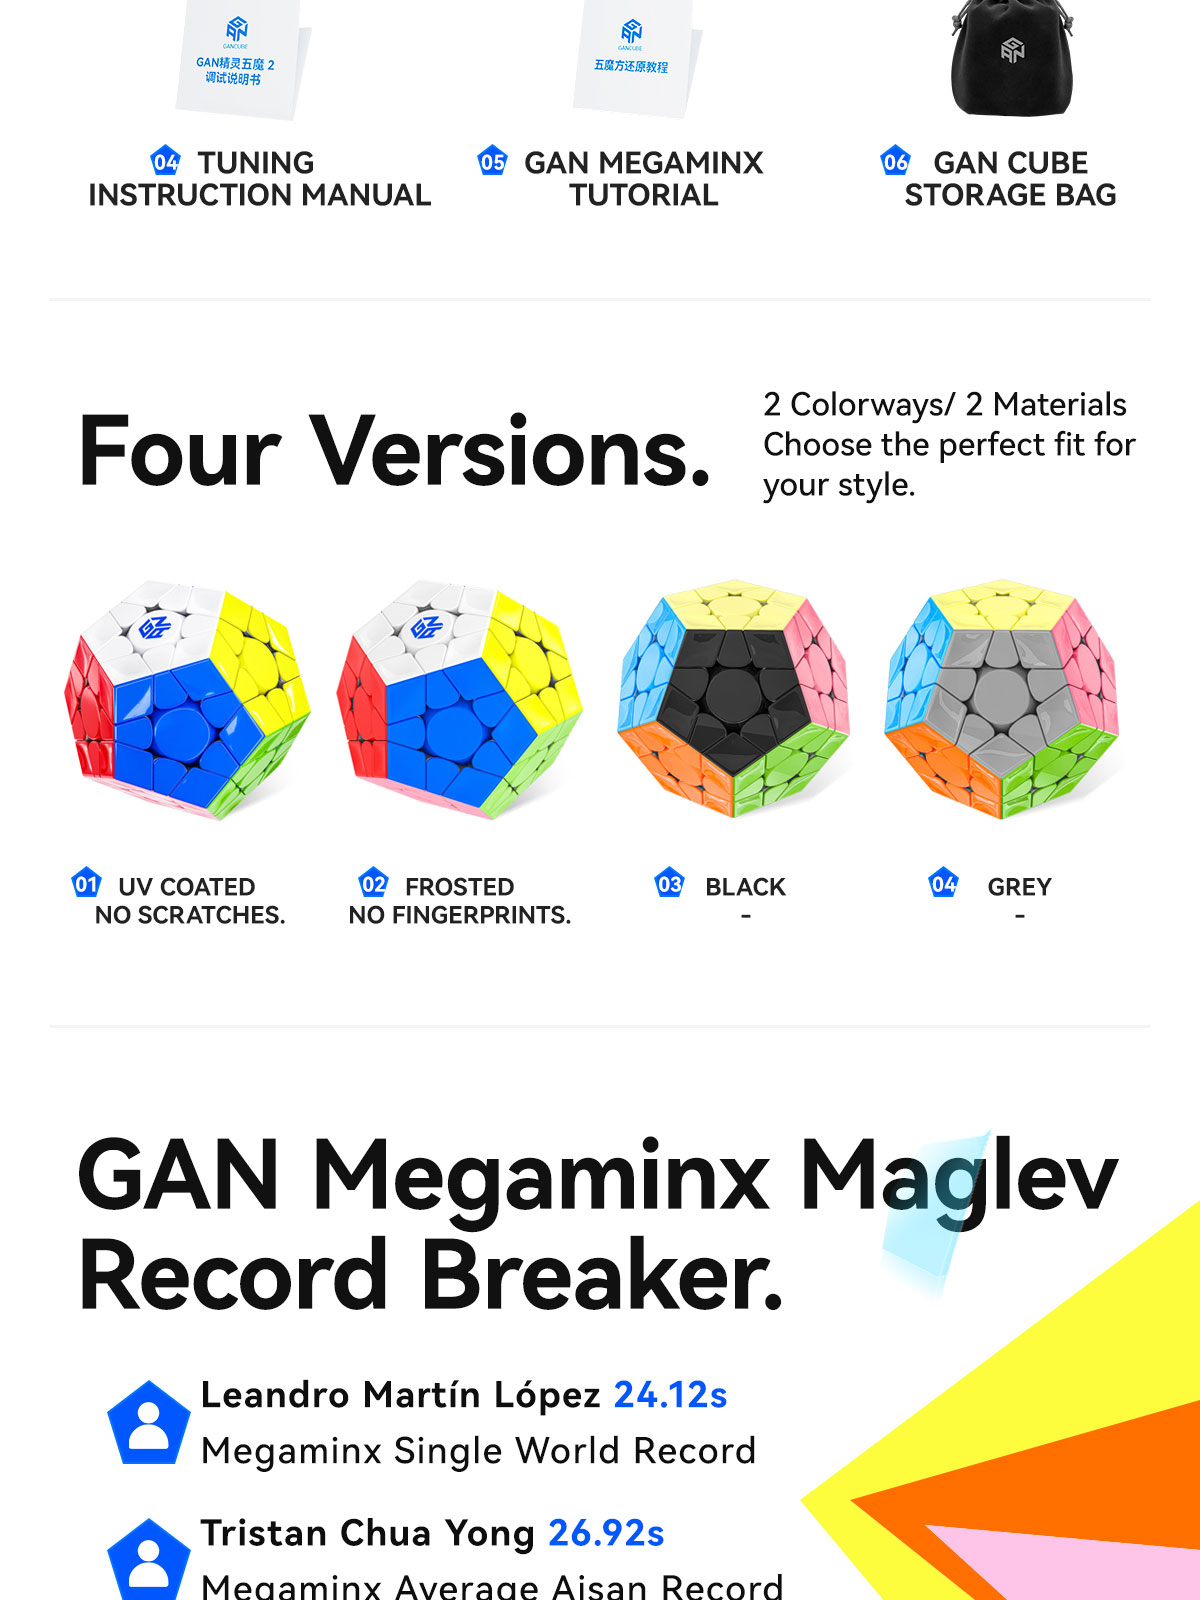 gan-megaminx-maglev-13-variants